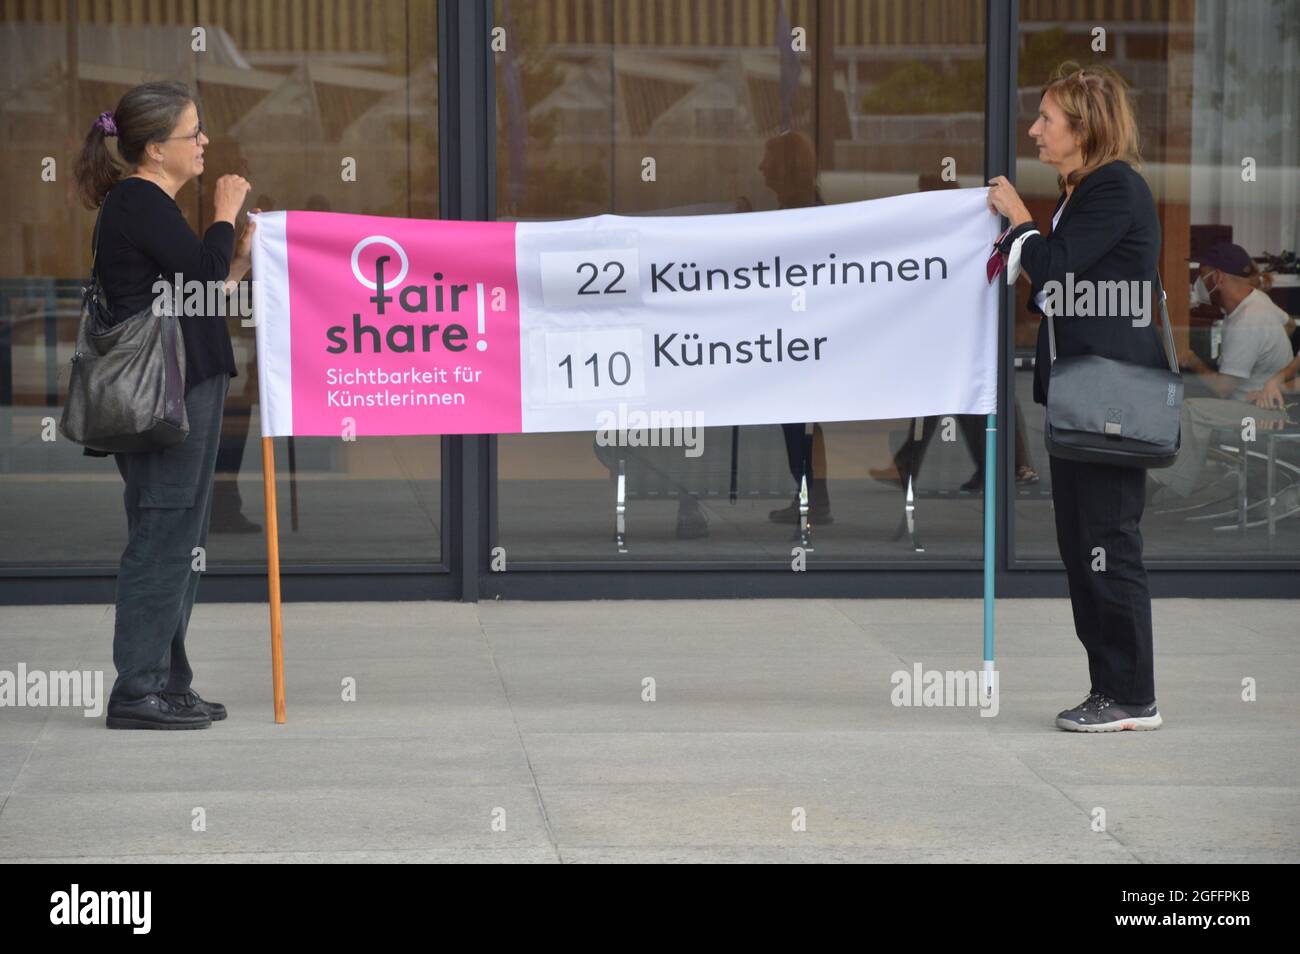 Manifestazione in fiera di fronte alla Neue Nationalgalerie di Berlino, Germania. Le donne chiedono una percentuale più elevata di artisti femminili nelle collezioni dei Musei nazionali di Berlino in futuro. Agosto 22, 2021. Foto Stock